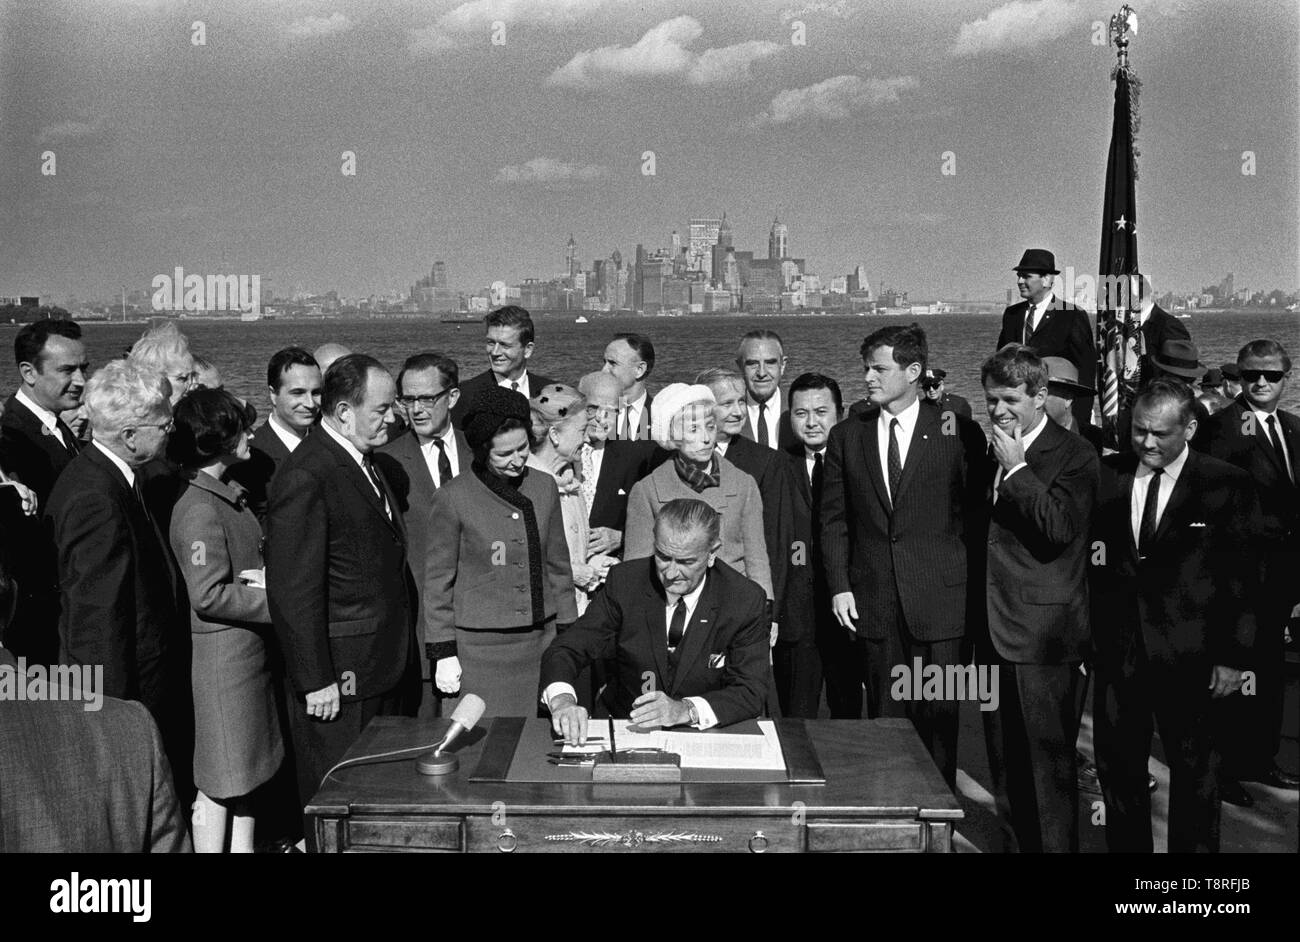 El presidente Lyndon B. Johnson firma la Ley de inmigración como vicepresidente Hubert Humphrey, Lady Bird Johnson, Muriel Humphrey, el Senador Edward (Ted) Kennedy, el Senador Robert F. Kennedy, y otros. Liberty Island, Nueva York, Nueva York - 3 de octubre de 1965 Foto de stock